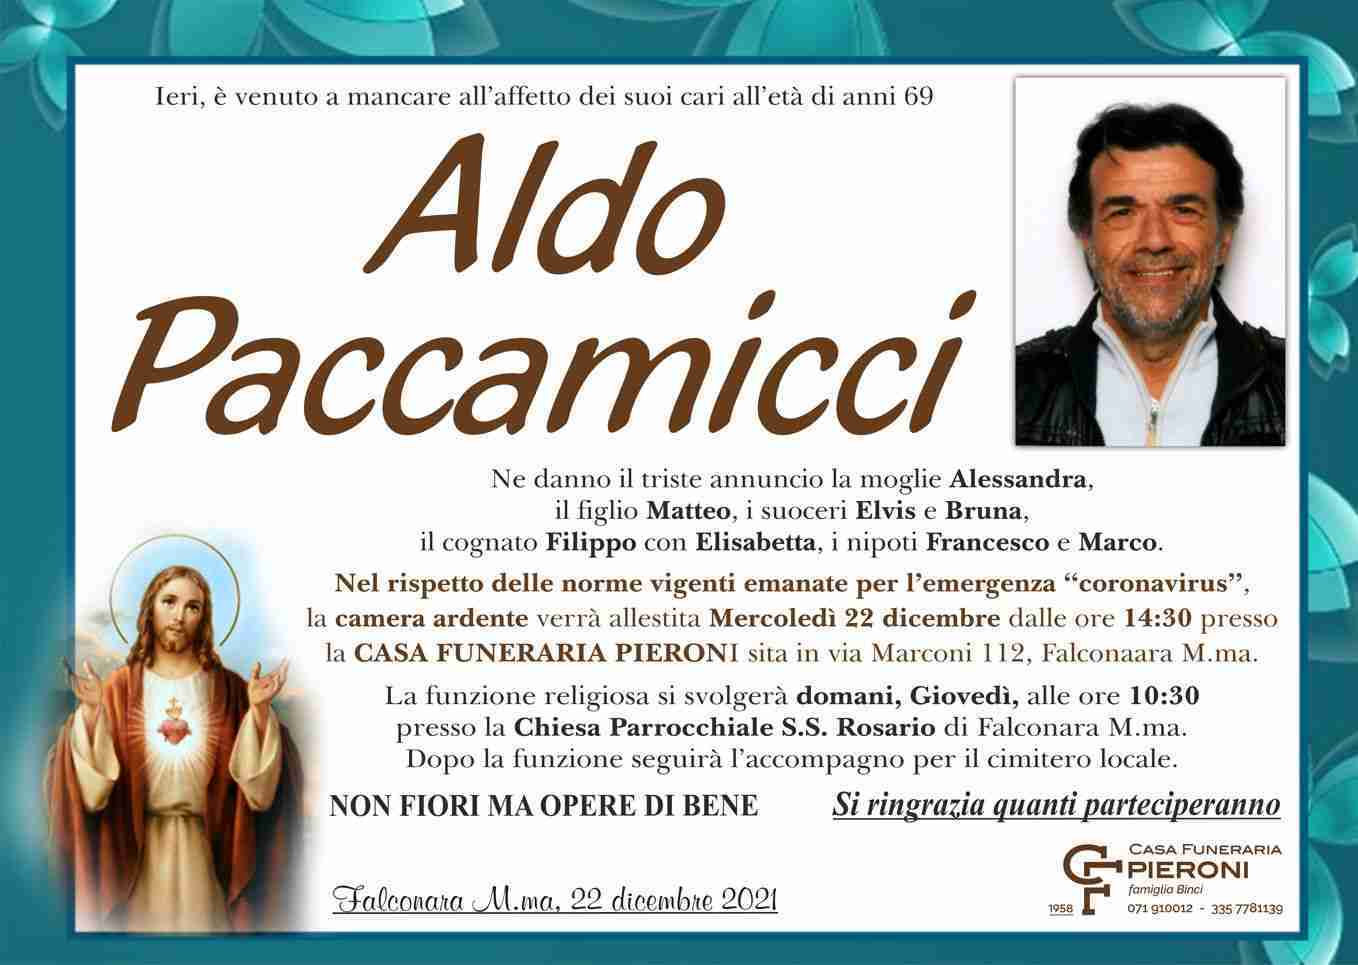 Aldo Paccamicci